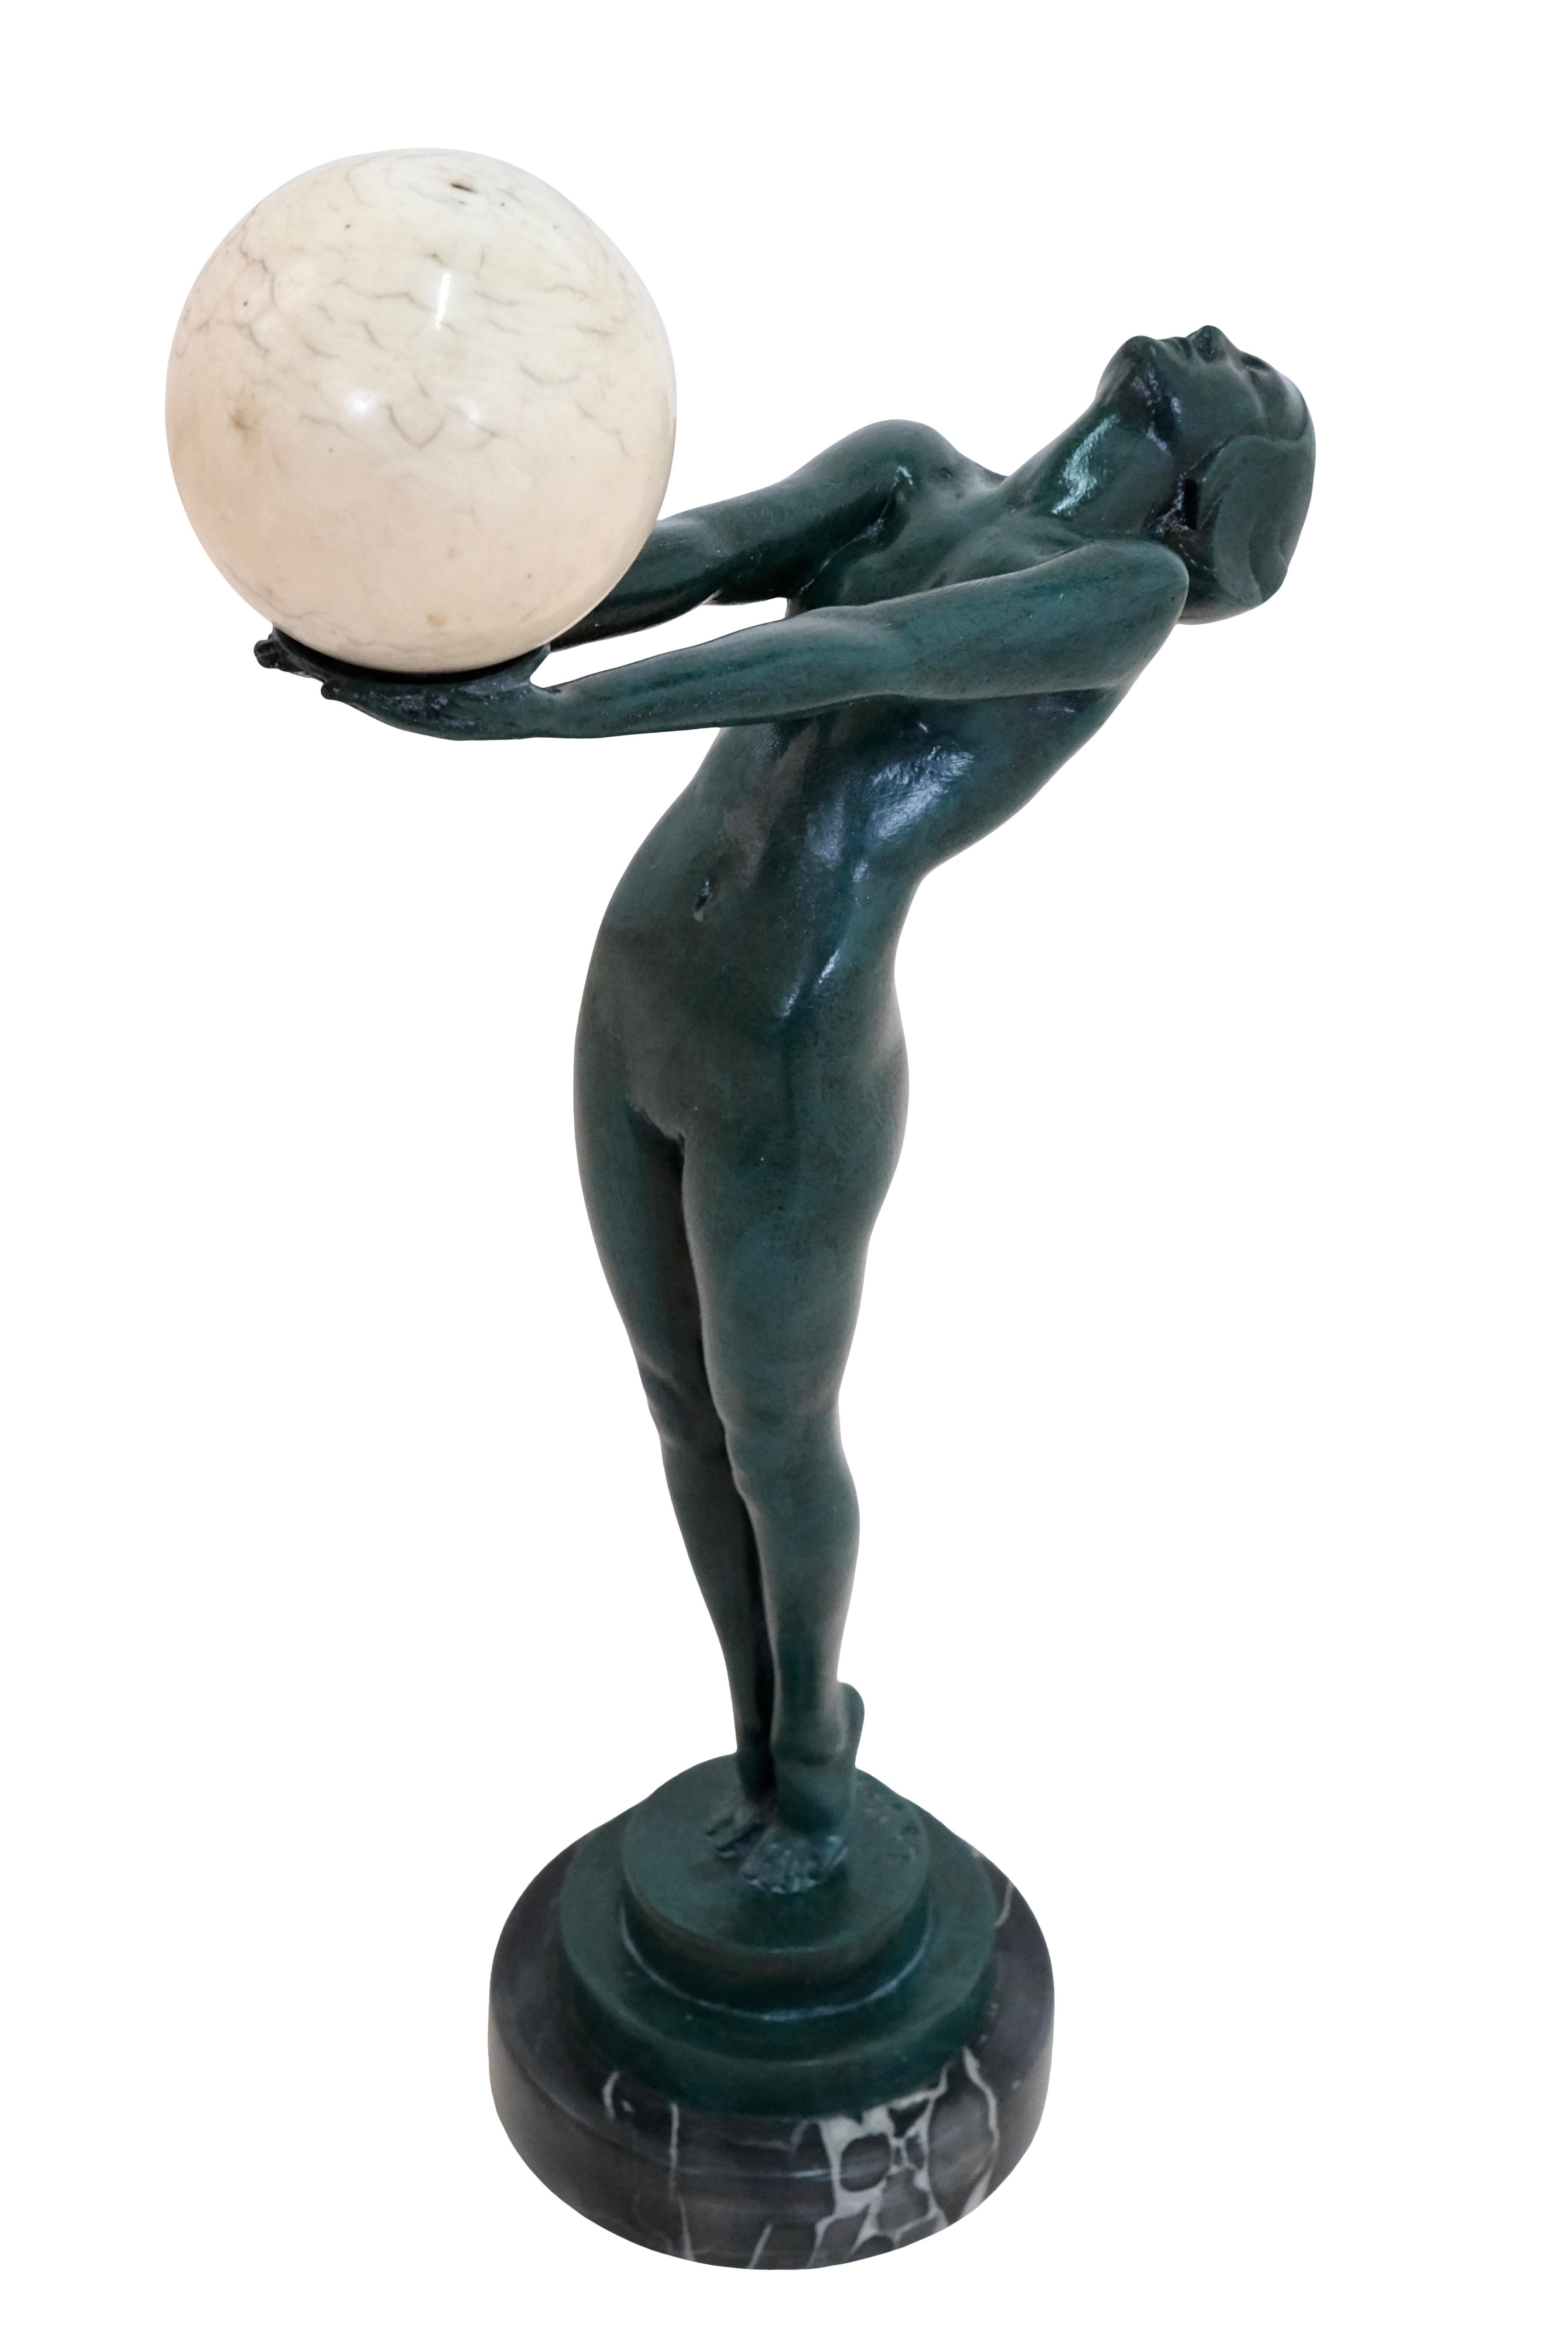 1928 schuf Max Le Verrier sein berühmtes CLARTÉ, eine Frau mit einer beleuchteten Glaskugel, das Hauptwerk seiner Karriere als Bildhauer.

Es wurden sogar mehrere lebende Modelle benötigt: eines für den Kopf, ein zweites für den Oberkörper und ein